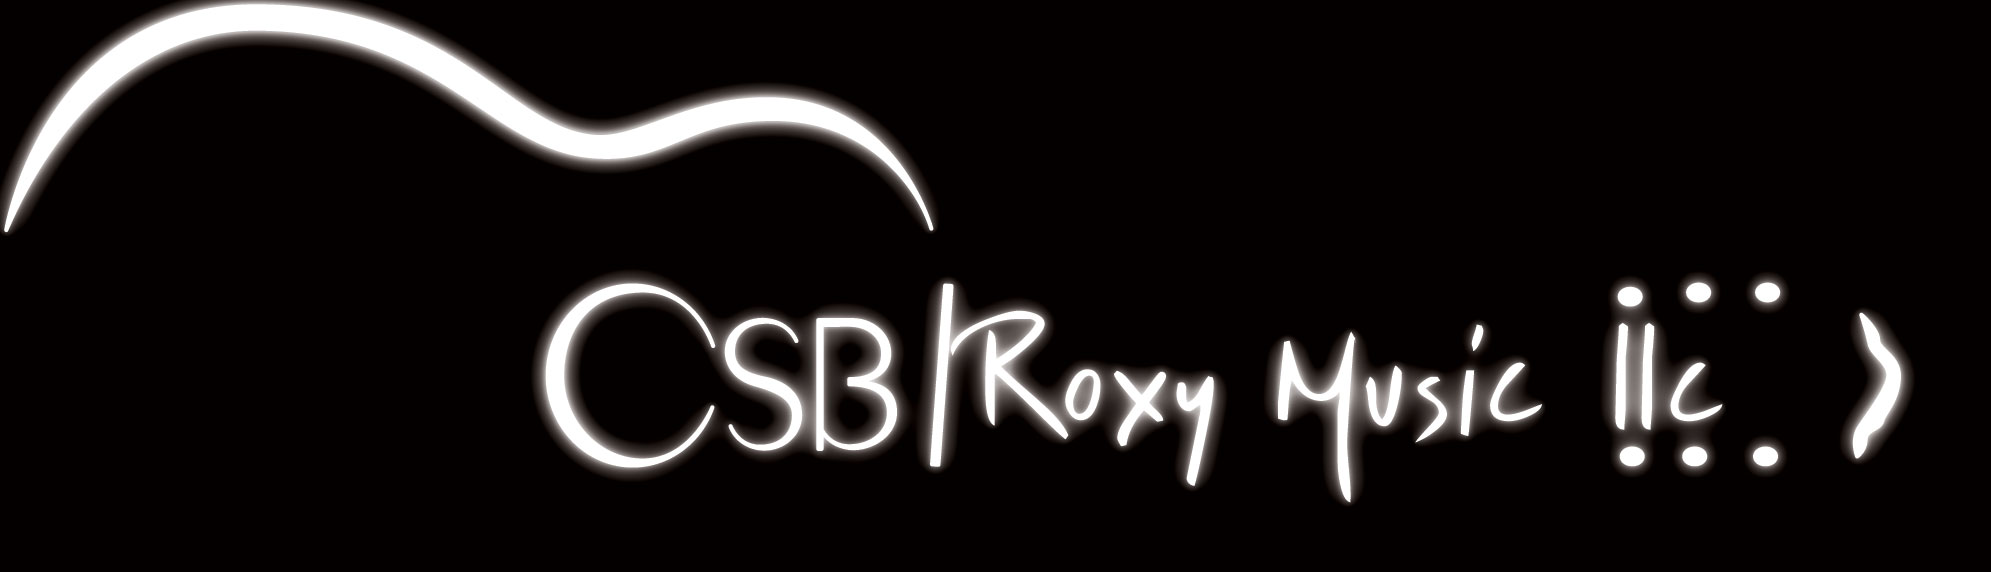 CSB Roxy Music